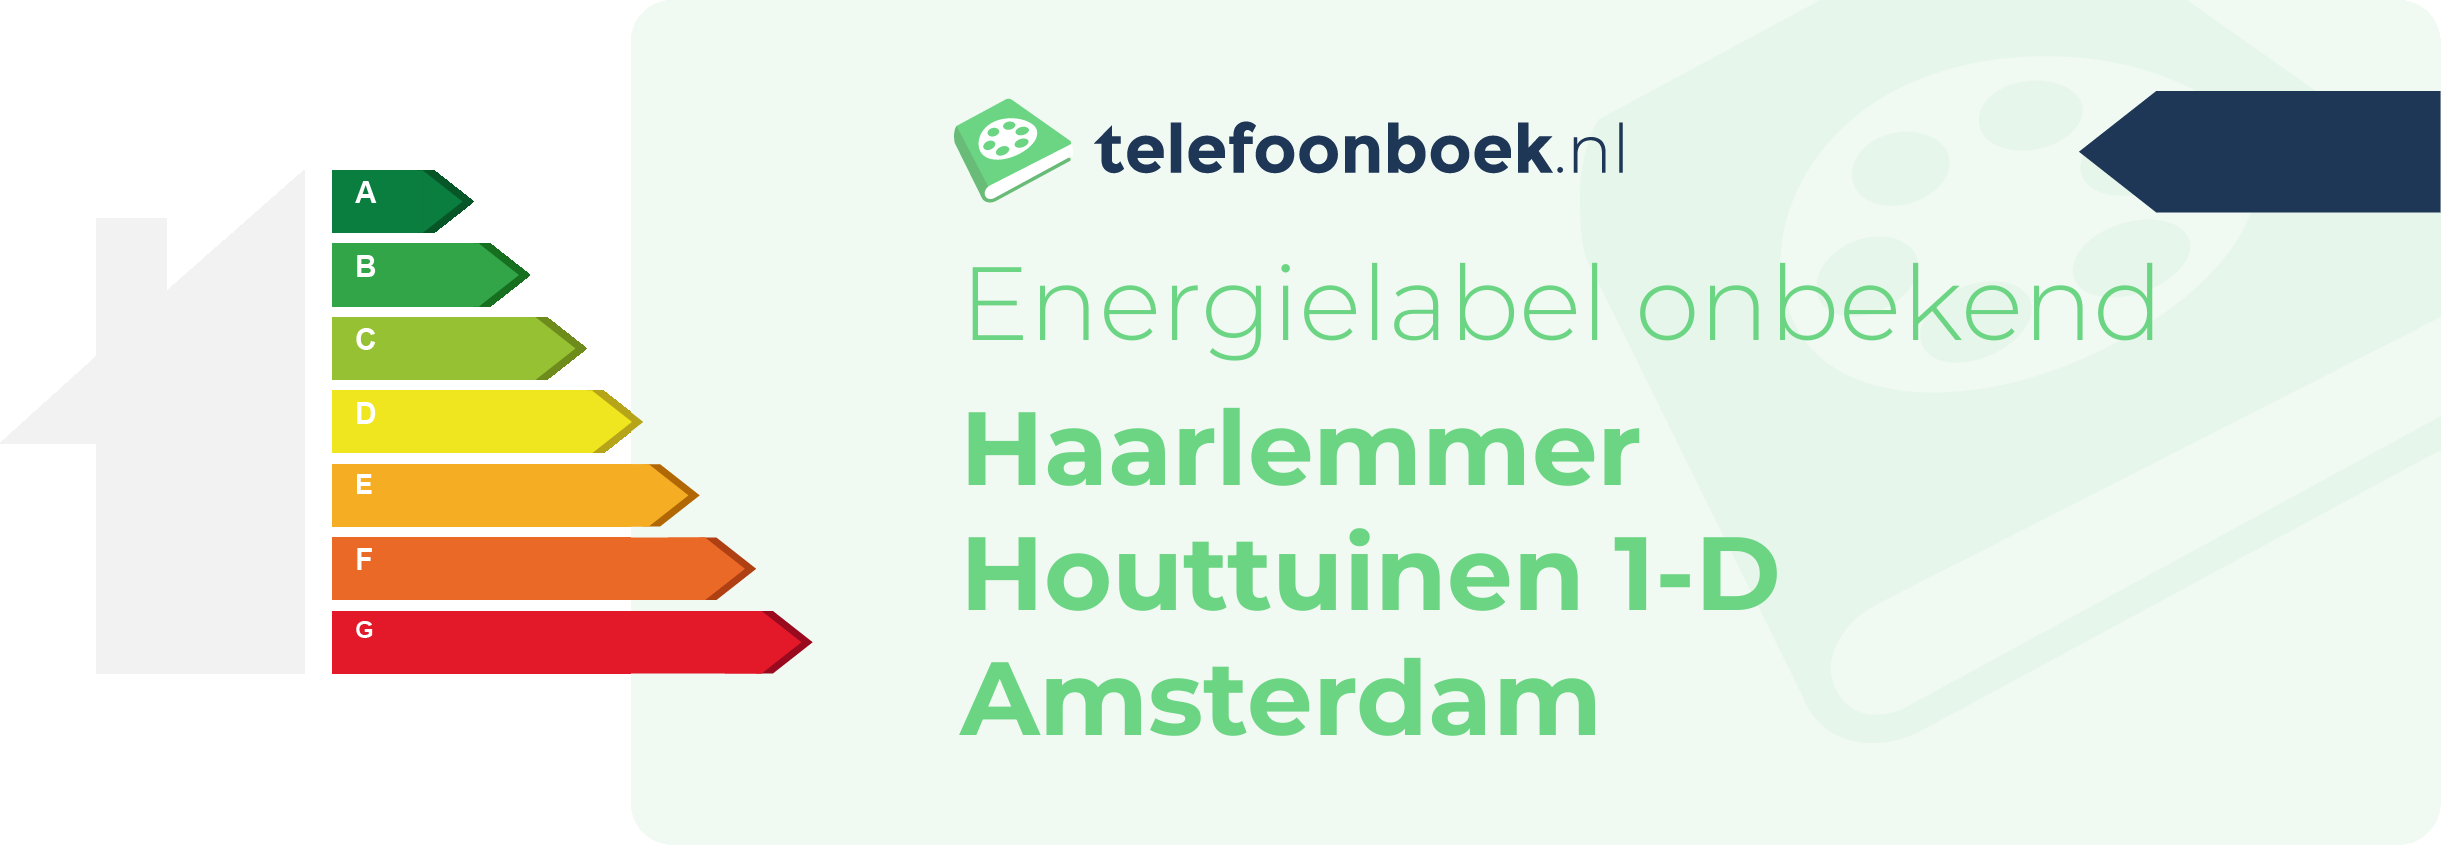 Energielabel Haarlemmer Houttuinen 1-D Amsterdam